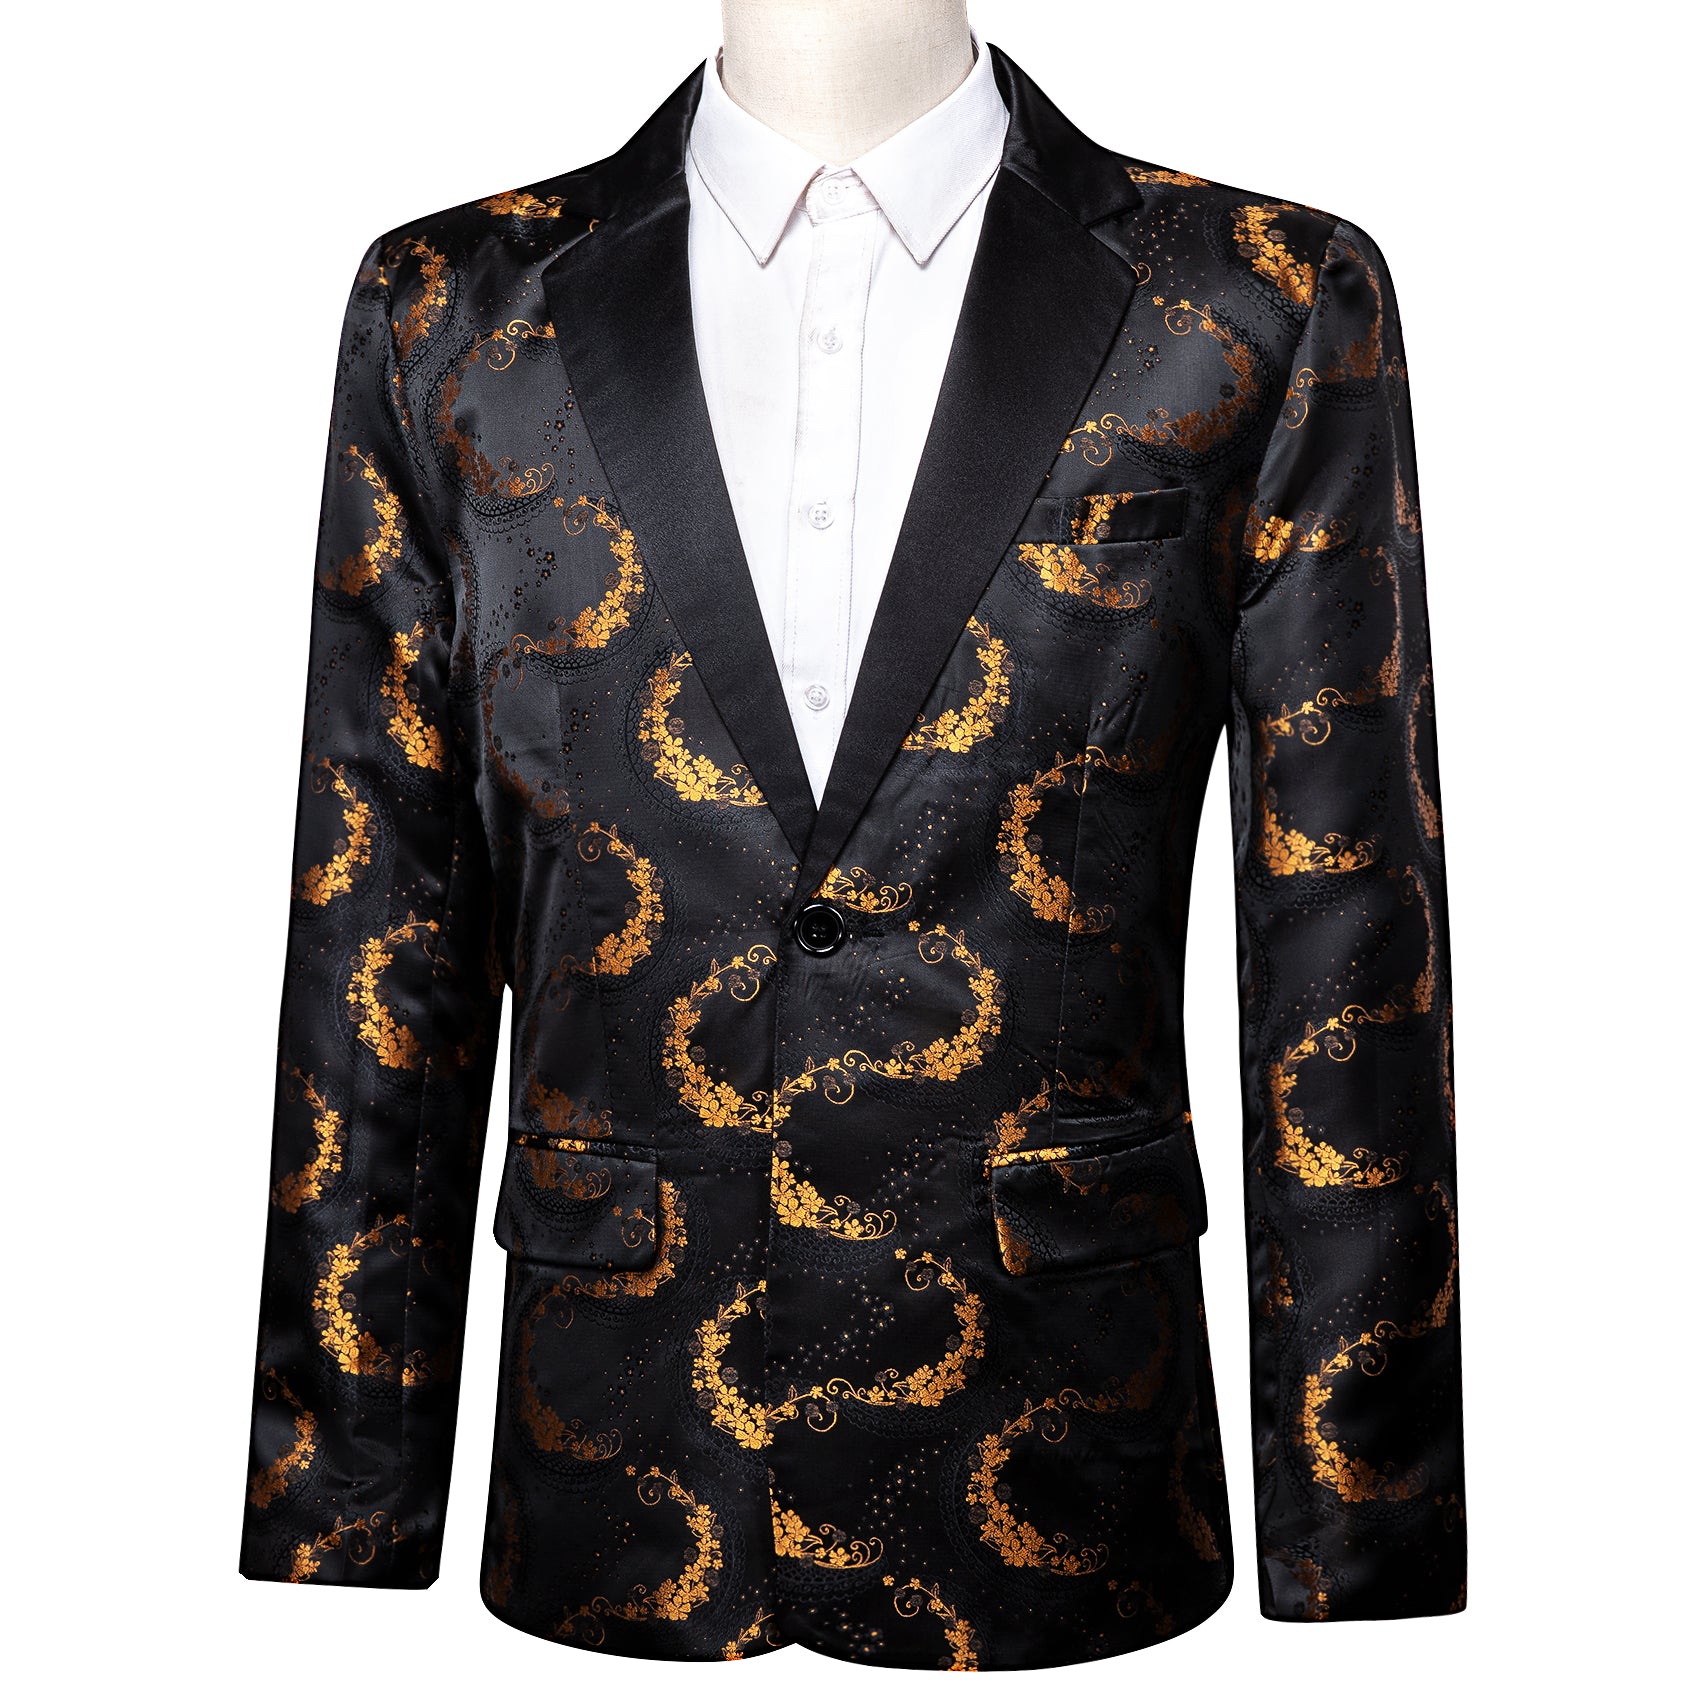 Barry.wang Men's Suit Black Gold Floral Notched Collar Suit Jacket Blazer